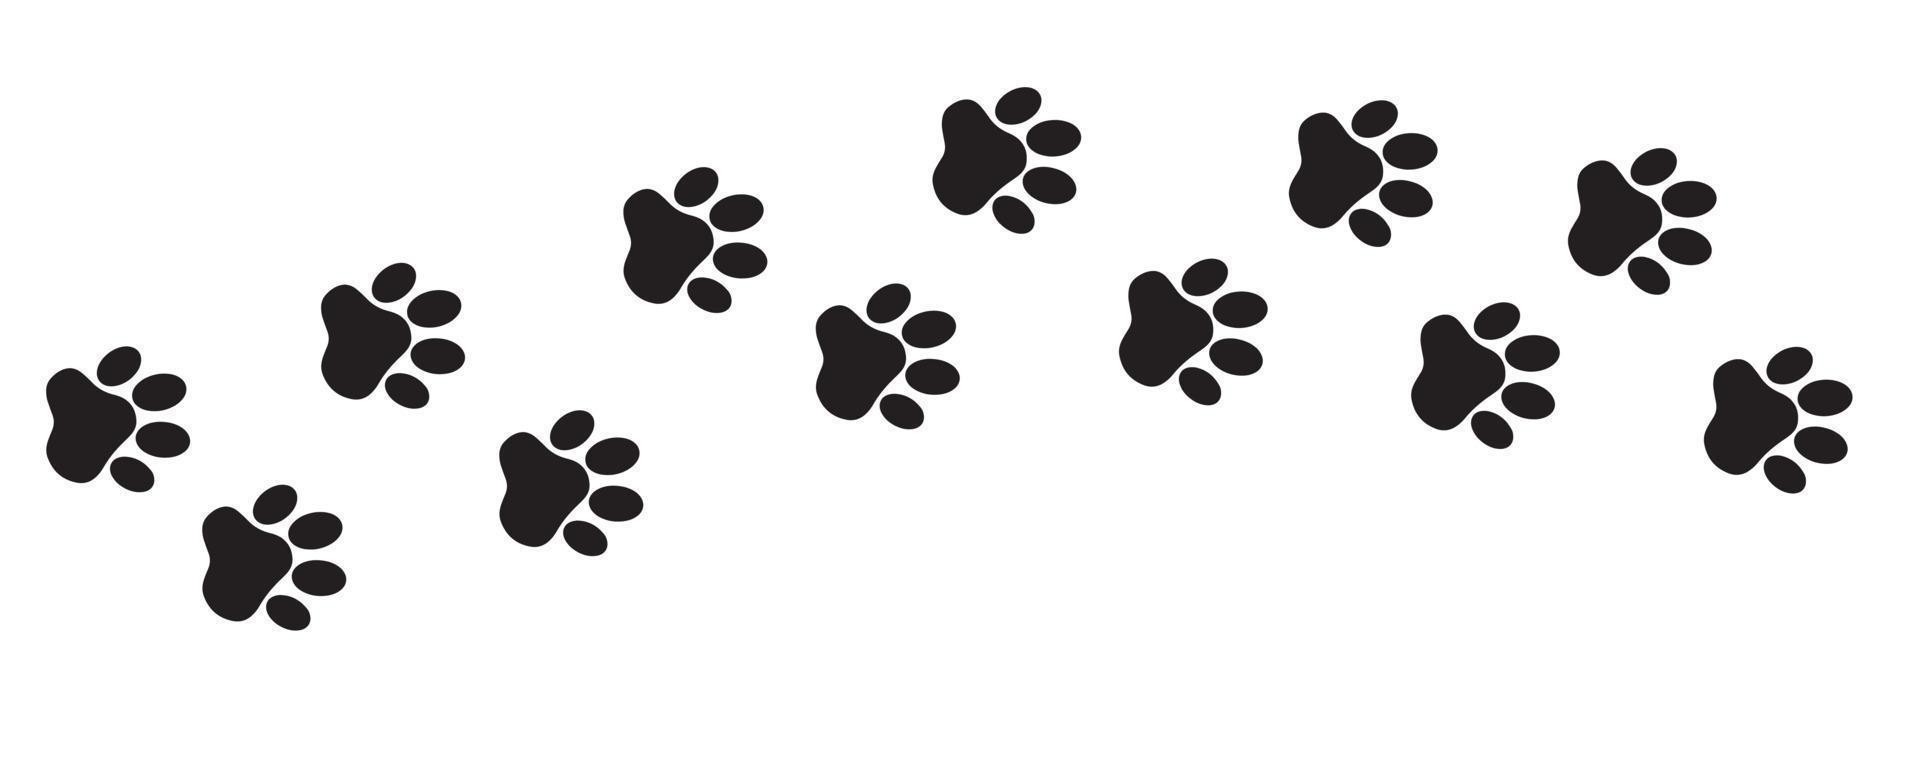 pegadas de animais de estimação, cães ou gatos. impressões de animais de estimação. padrão de pata. impressão de pata na forma de uma silhueta negra vetor